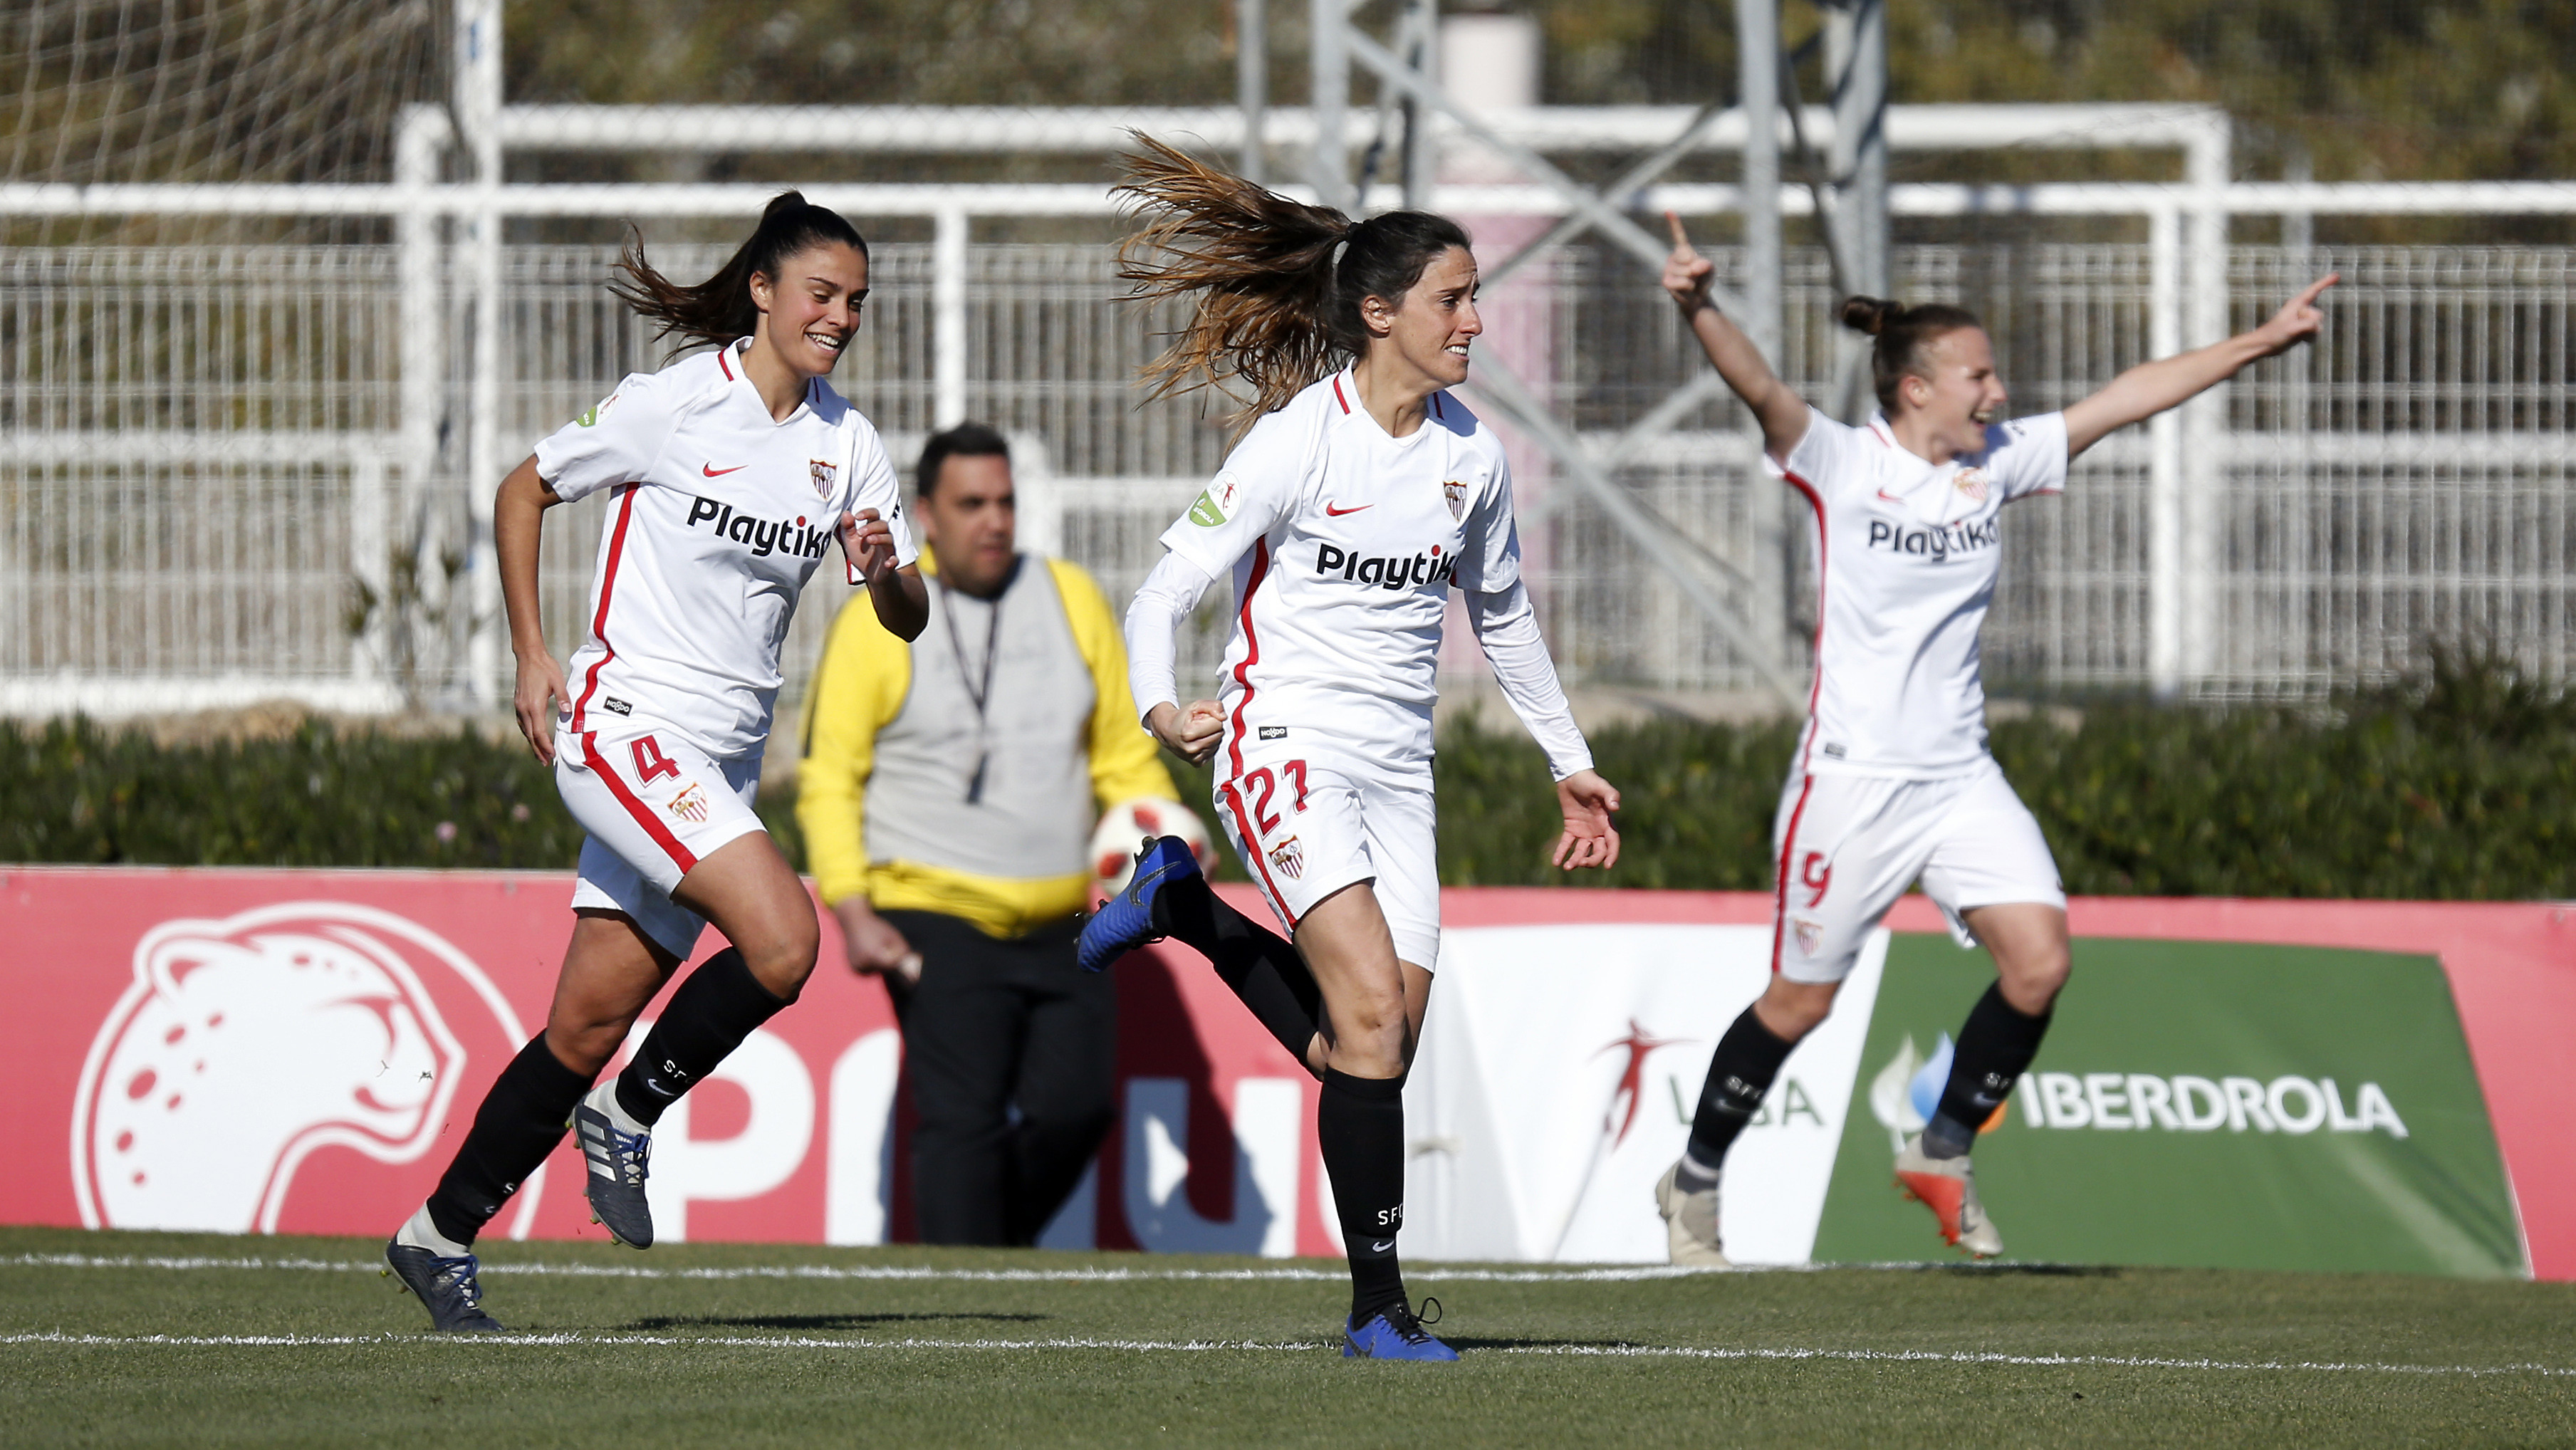 Maite Albarrán, escoltada por Marta Carrasco y Raquel Pinel, corre para celebrar el gol que anotó para el primer equipo femenino del Sevilla FC ante el Rayo Vallecano